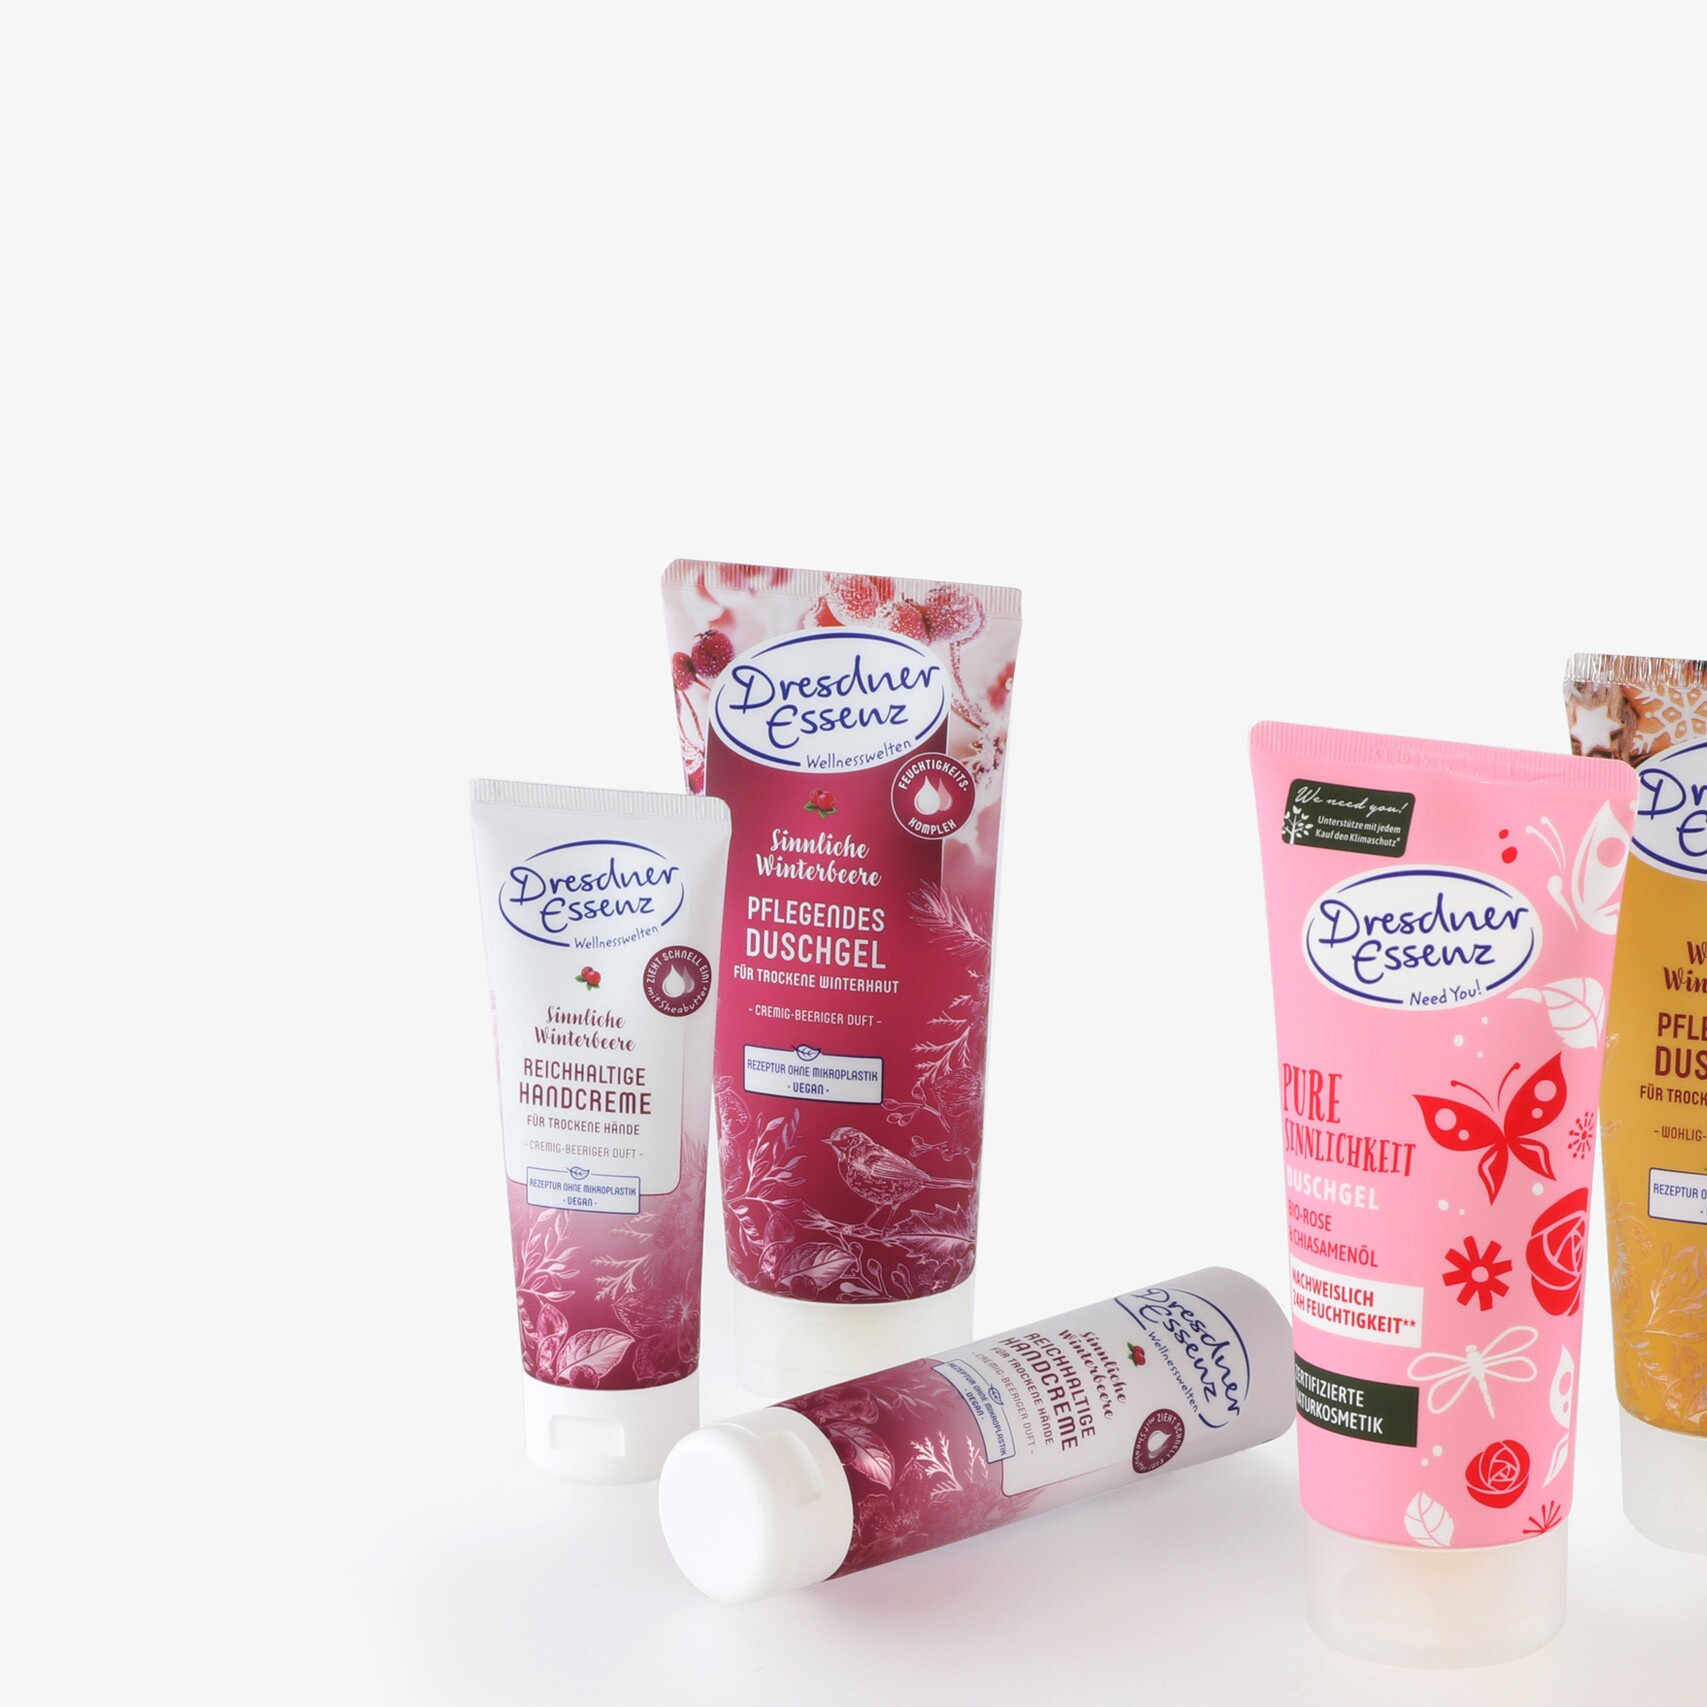 Groupe de cinq tubes de produits de soins corporels de la marque Dresdner Essenz, imprimés différemment.